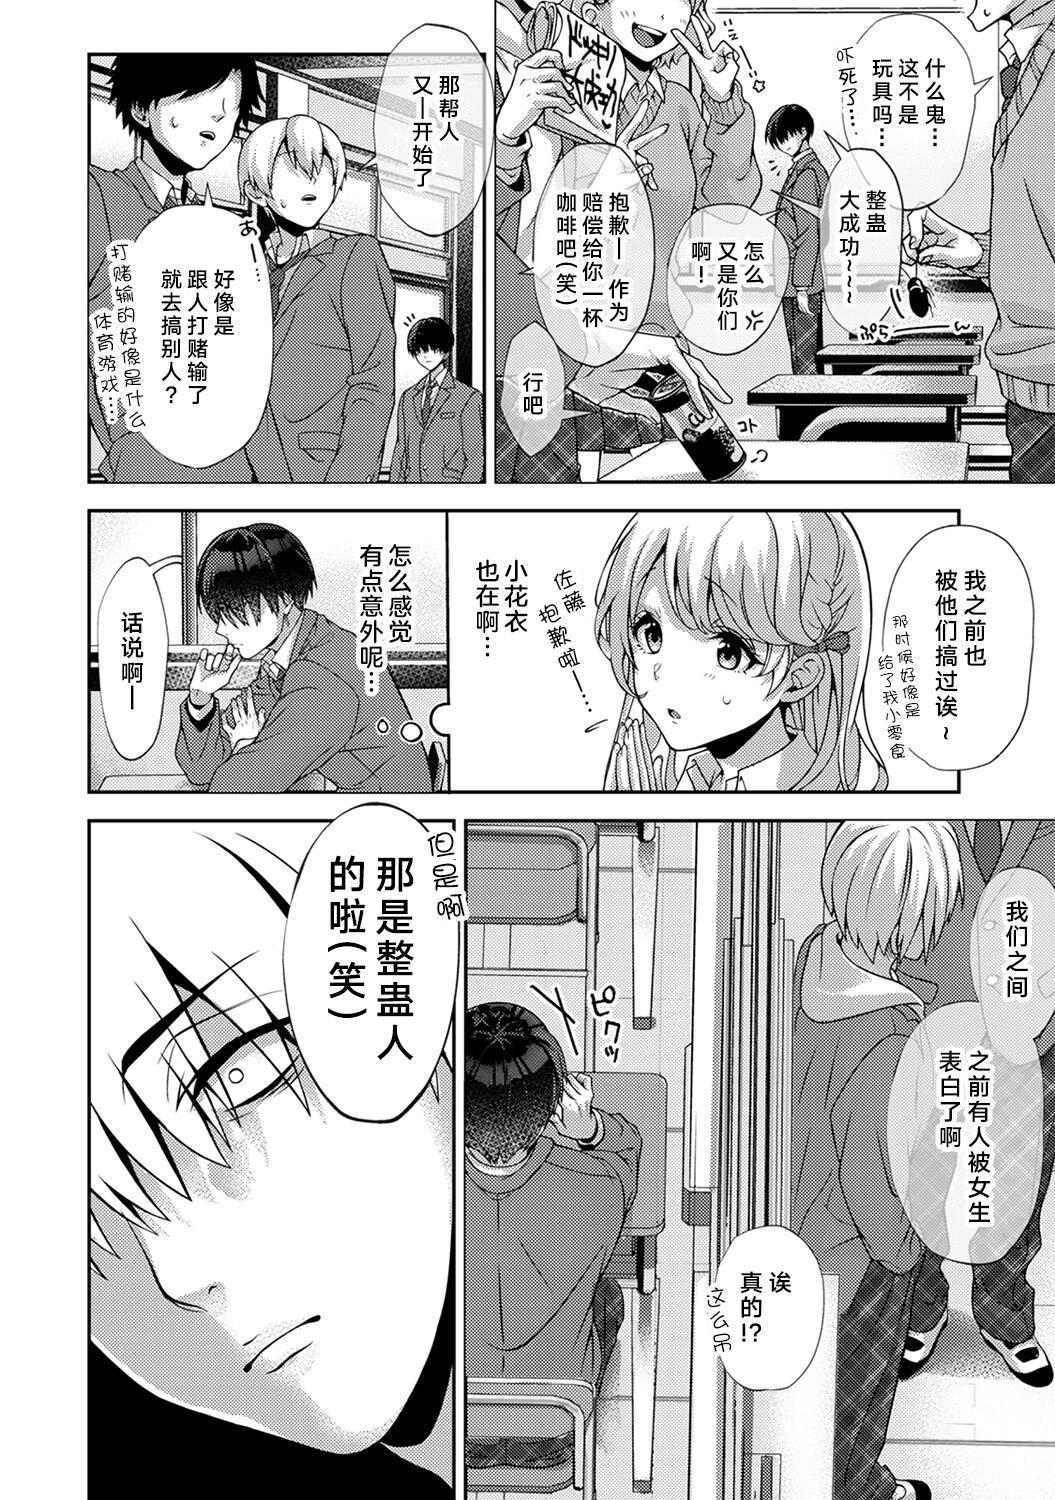 Hottie 『 ore da ke ni koakuma na doukyuusei fu tta ra oshitao sa rema shi ta ~ 』 Ch. 1-4 Menage - Page 5